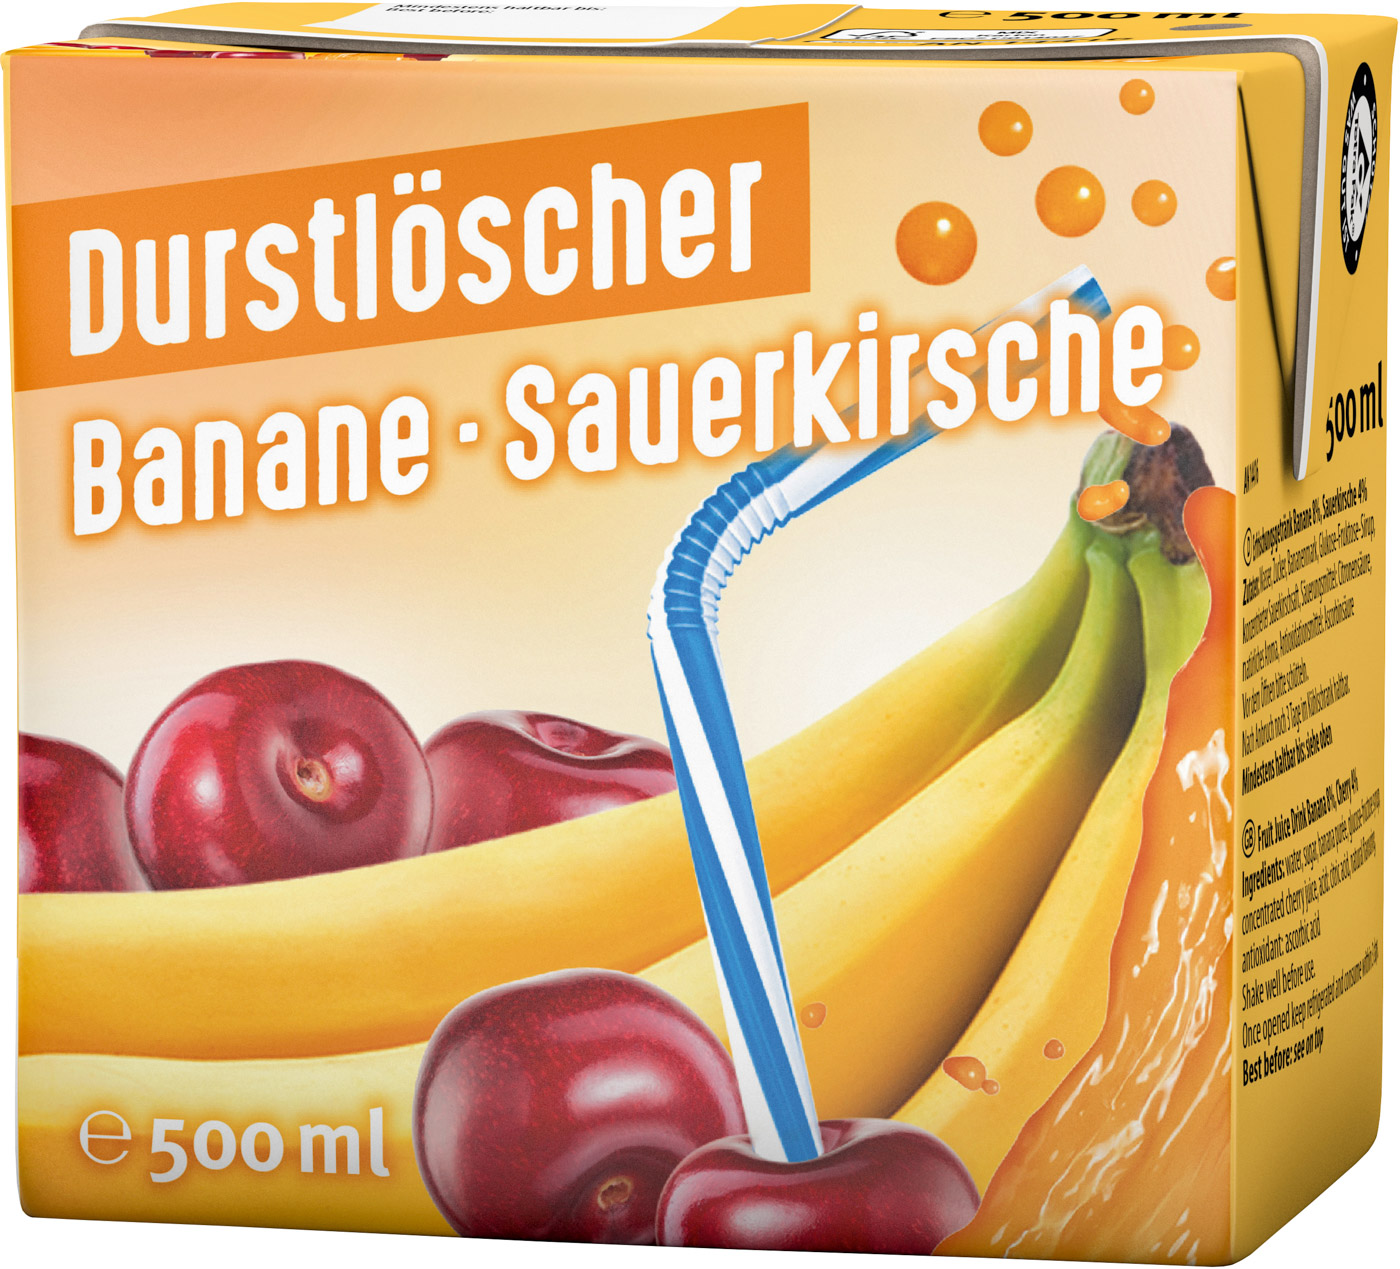 Durstlöscher Erfrischungsgetränk Banane- Sauerkirsche 0,5L Tetrapack